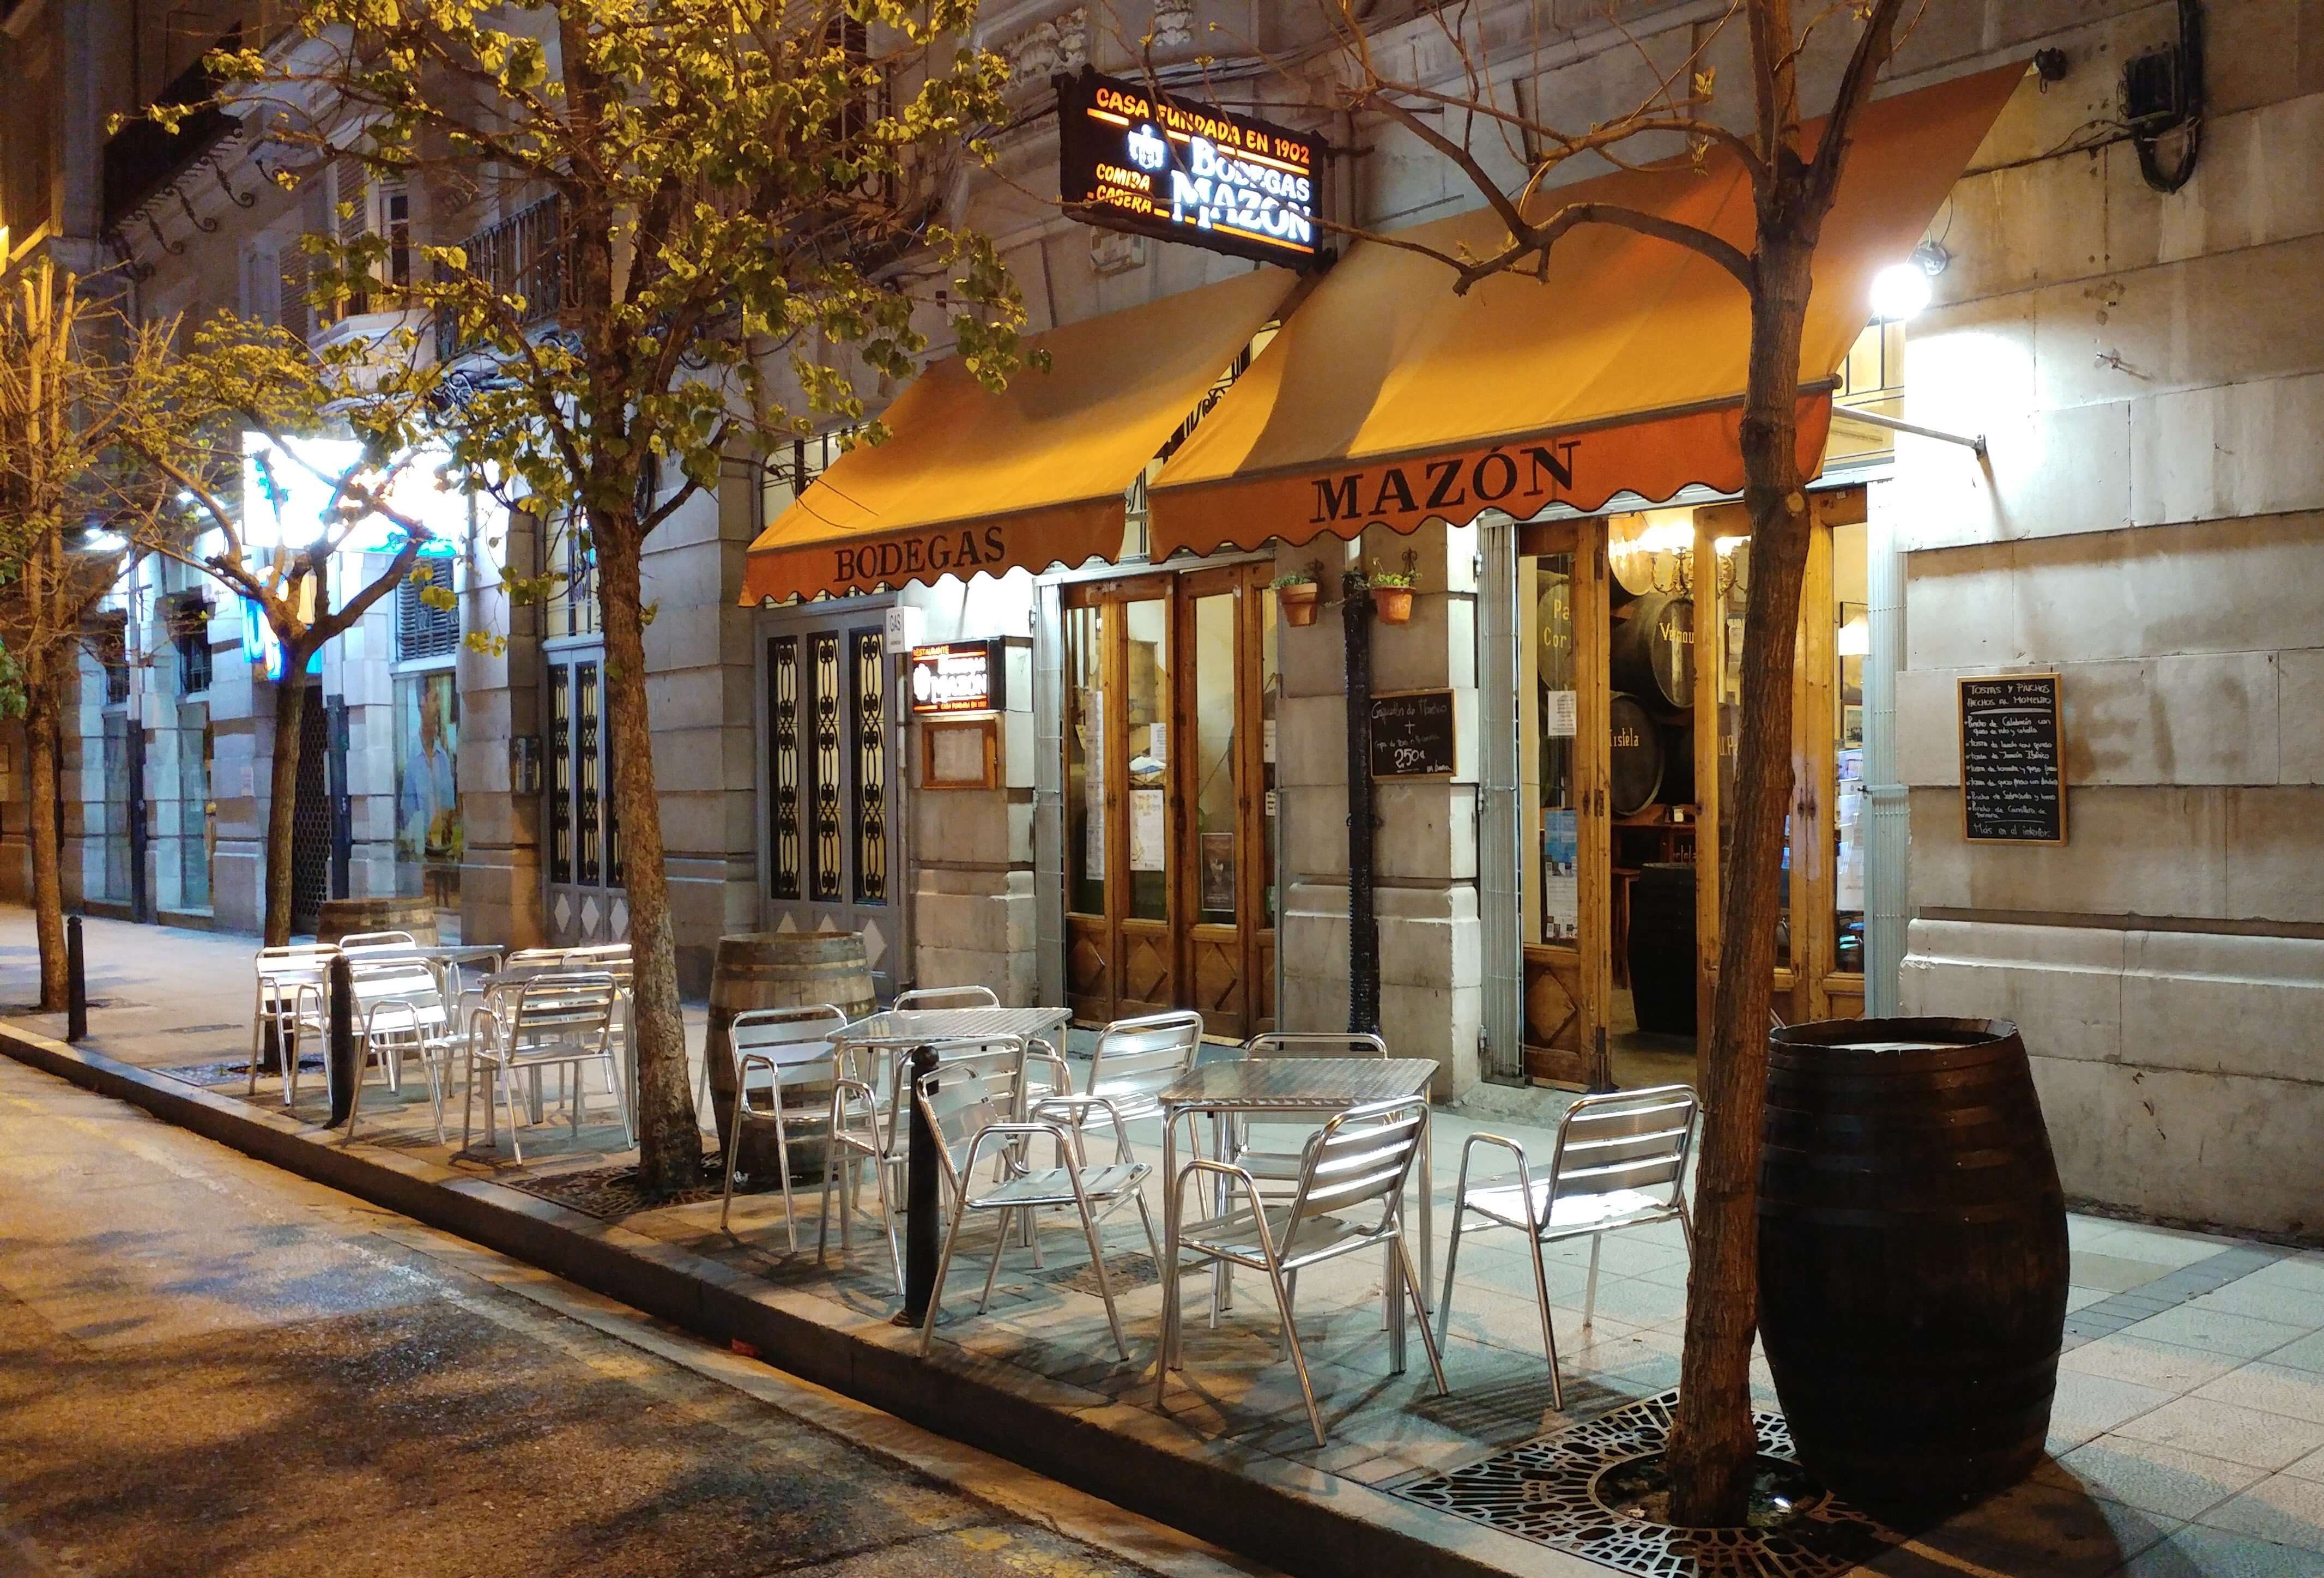 Bodega-restaurante especializada en comida casera en Puertochico de Santander.                                  